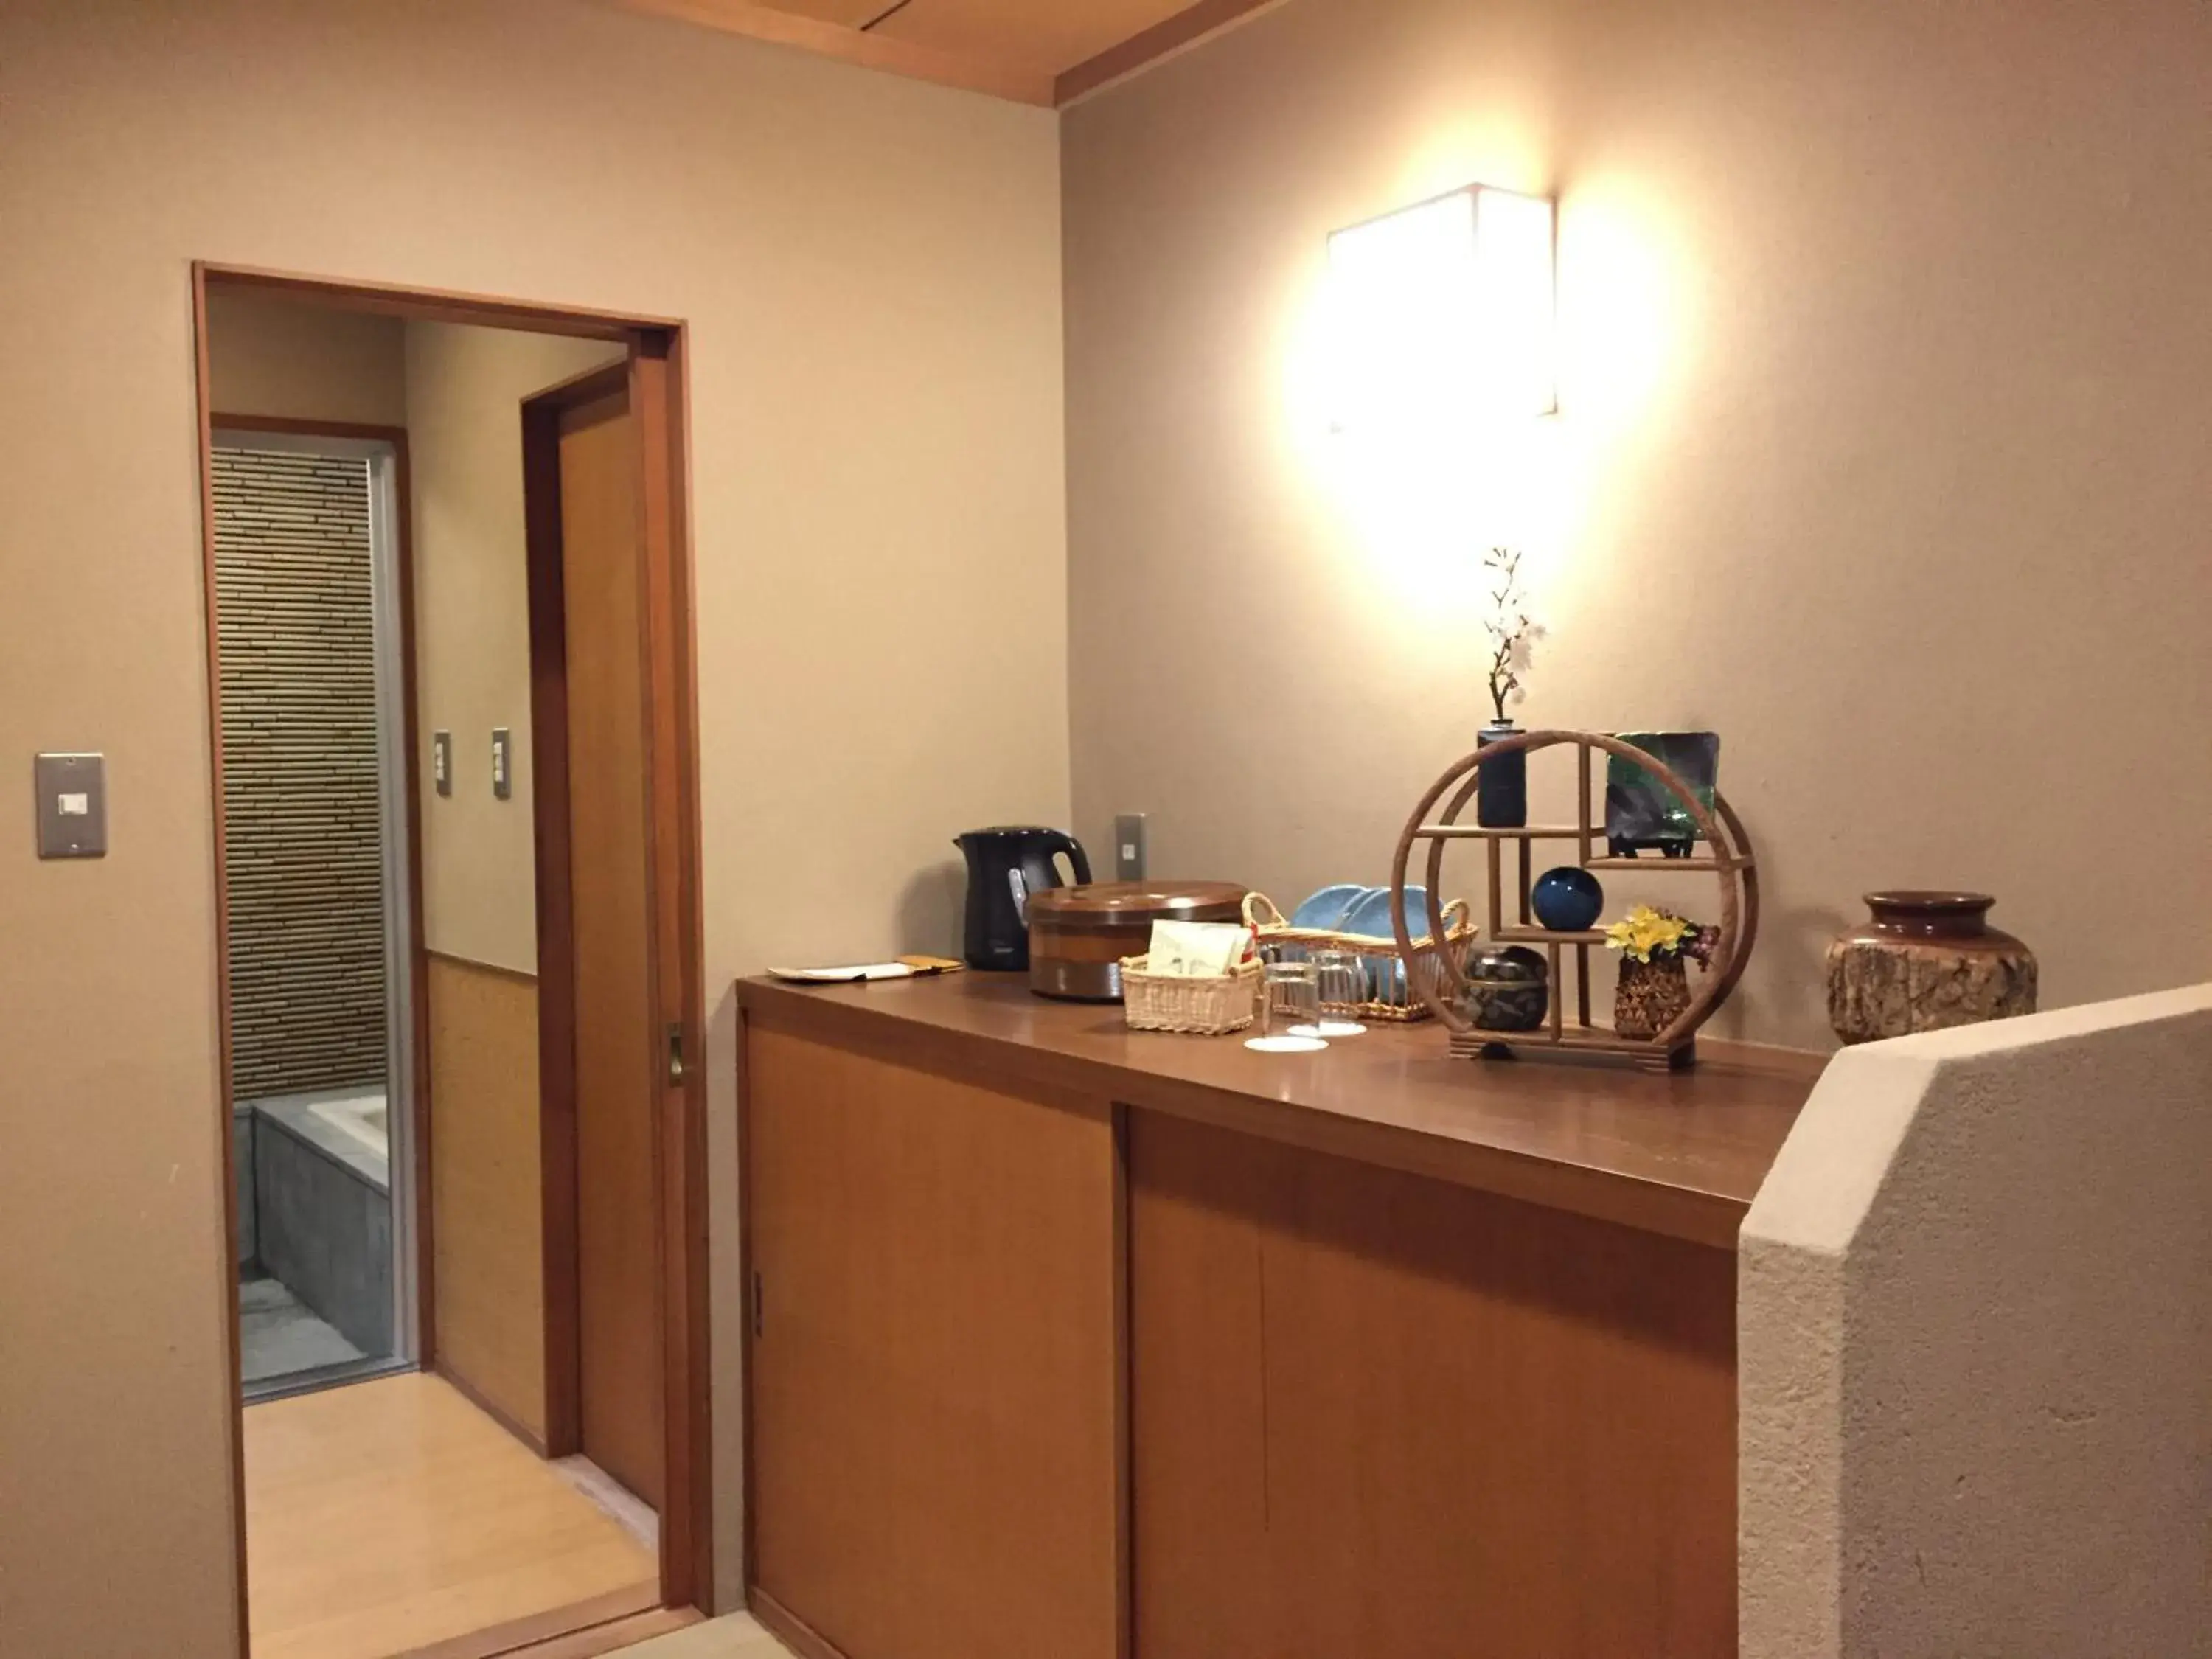 Photo of the whole room in Kyu Karuizawa Hotel Otowa No Mori